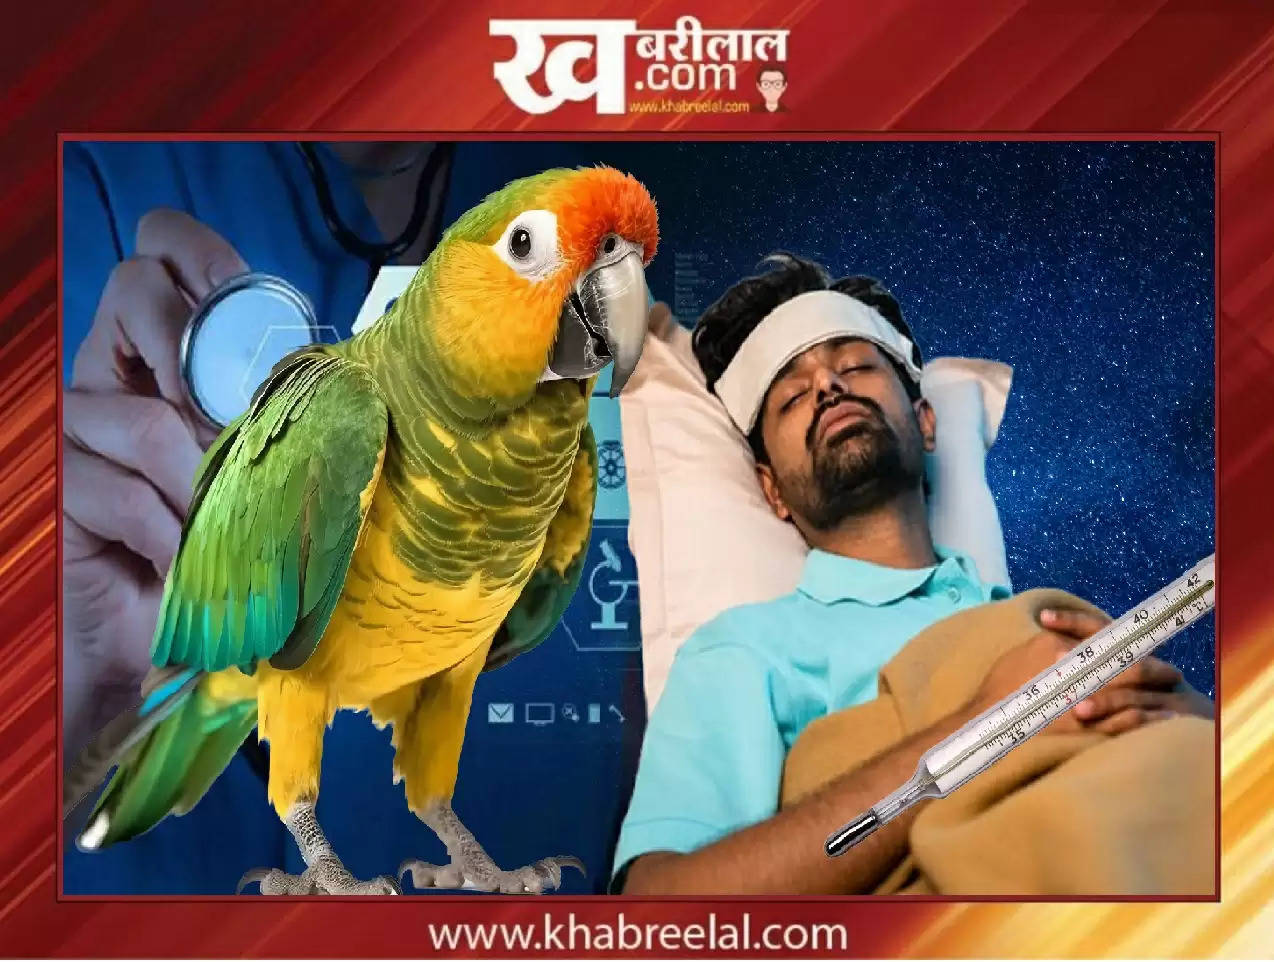 Parrot Fever